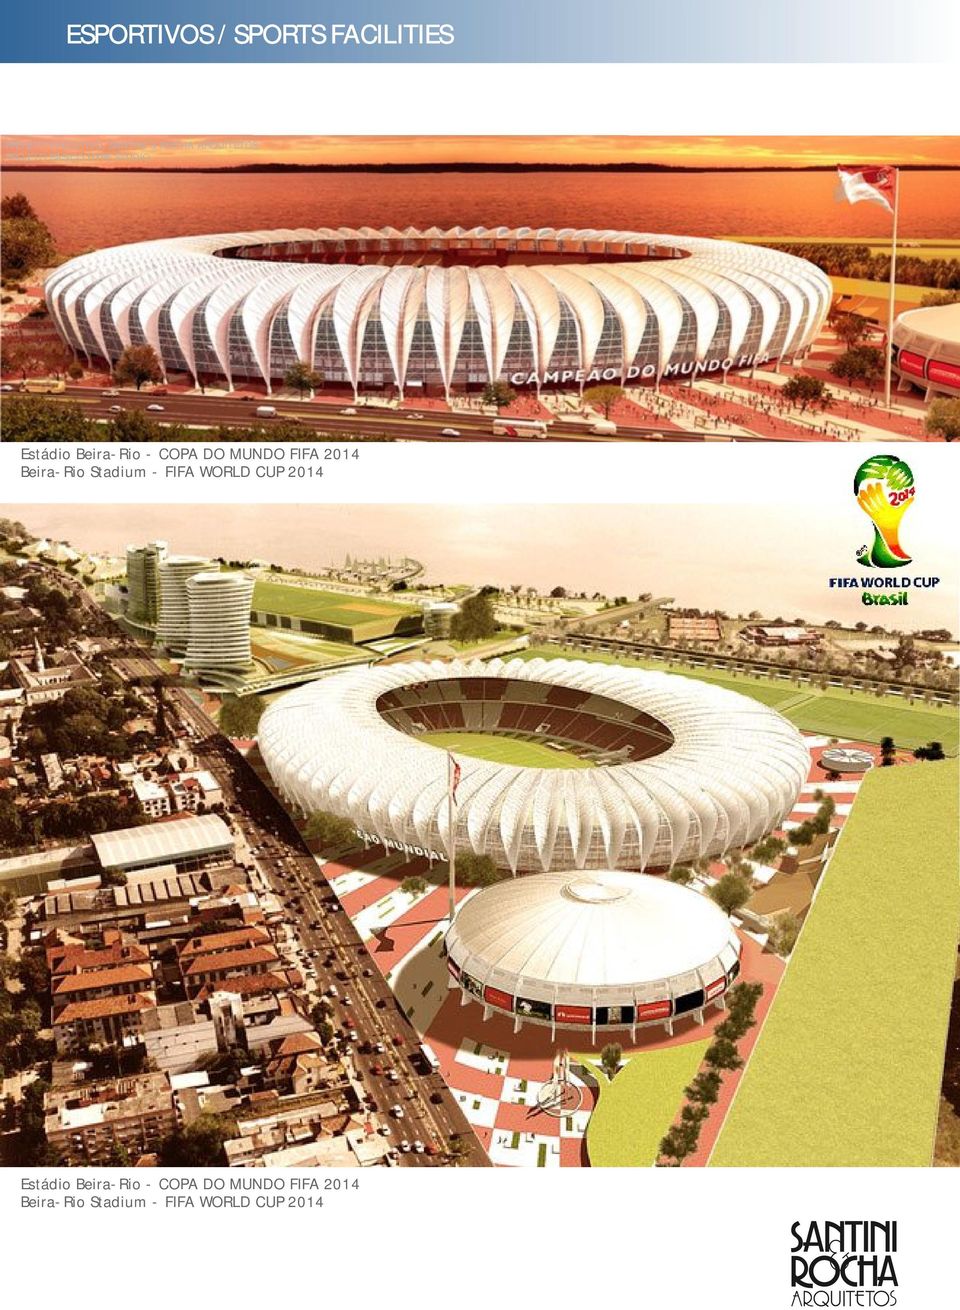 MUNDO FIFA 2014 Beira-Rio Stadium - FIFA WORLD CUP 2014 Estádio